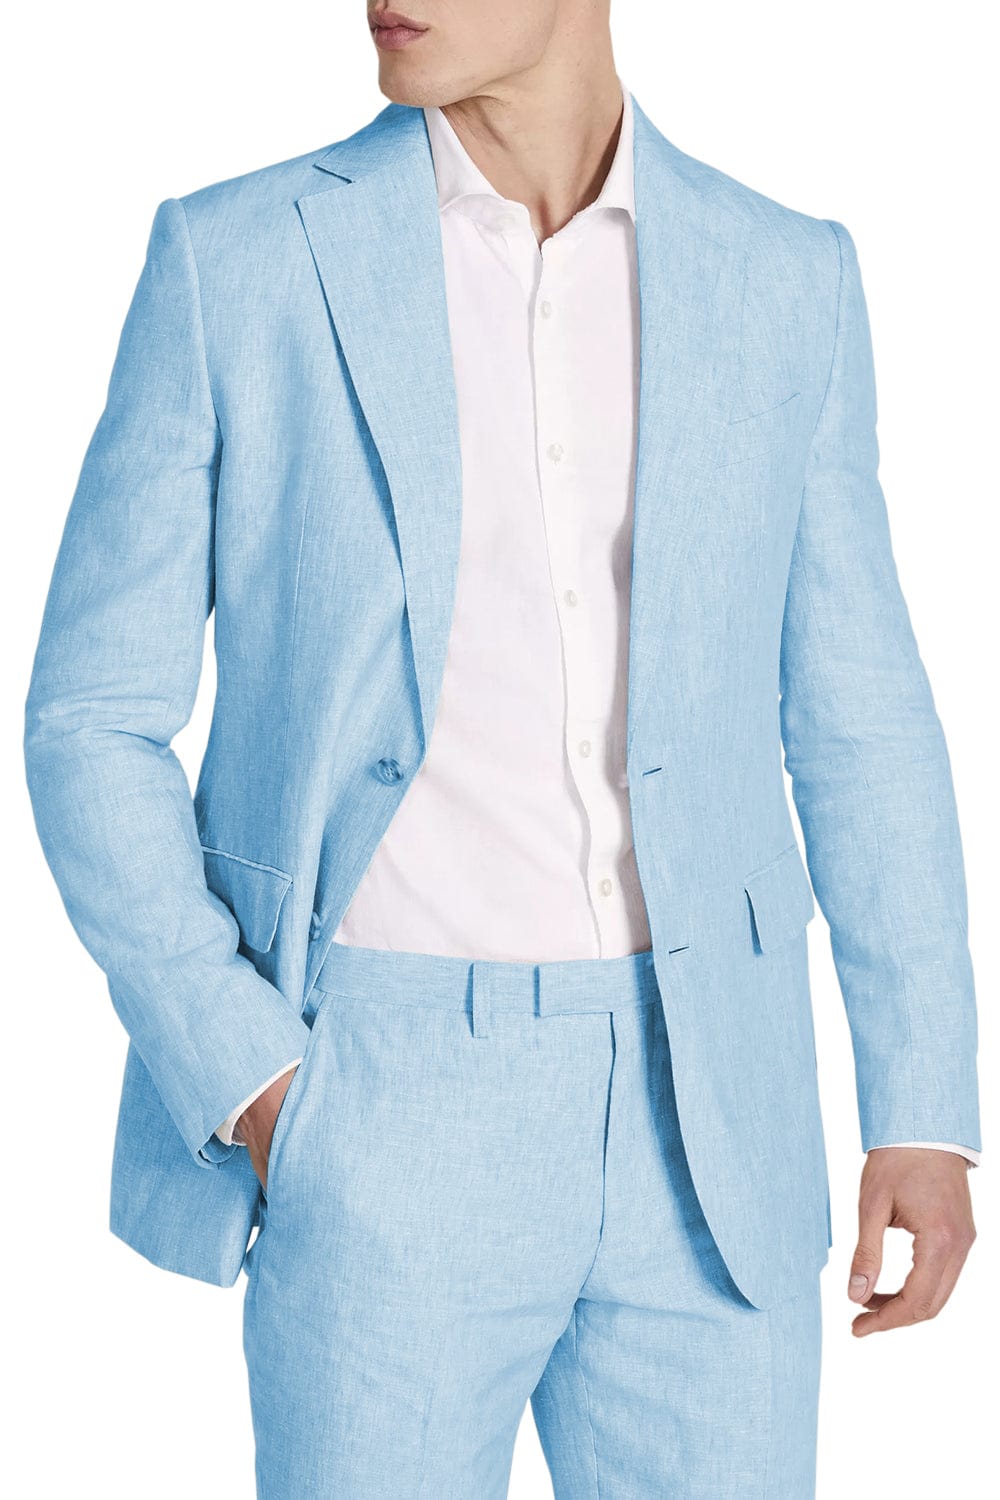 aesido Men's Suit 2 Pieces Business Casual Double Button Jacket (Blazer+Pants)